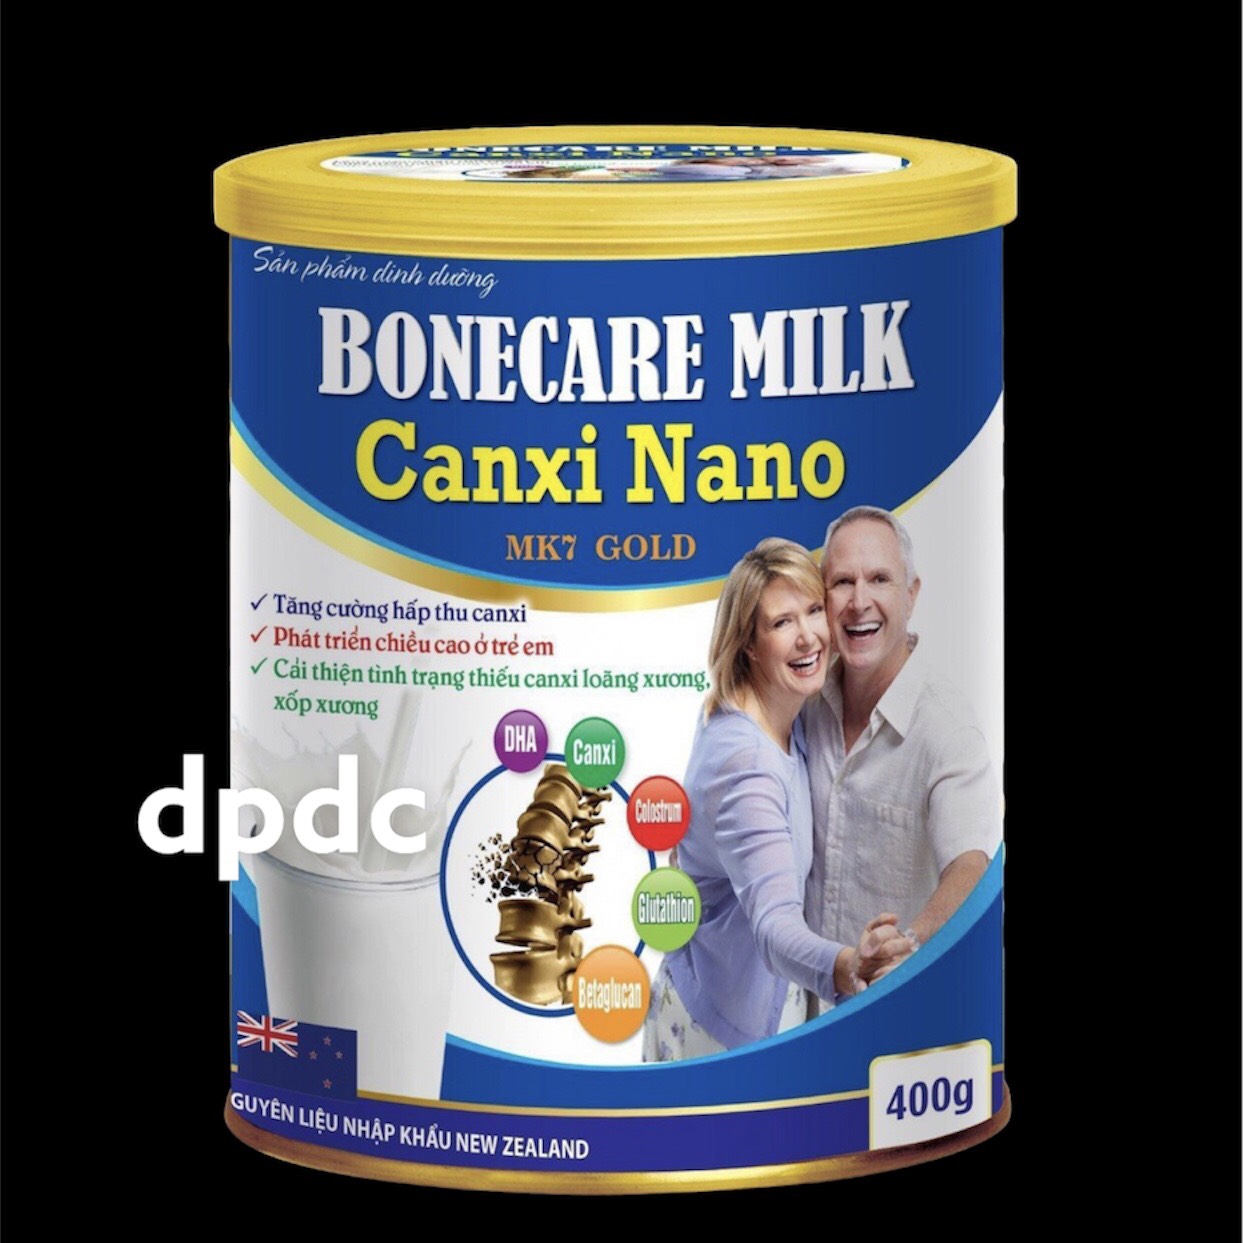 Sữa Bột Tăng Chiều Cao Bonecare Milk Canxi Nano MK7 Gold- Tăng Cường Hấp Thu Canxi Phát Triển Chiều Cao Ở Trẻ Em